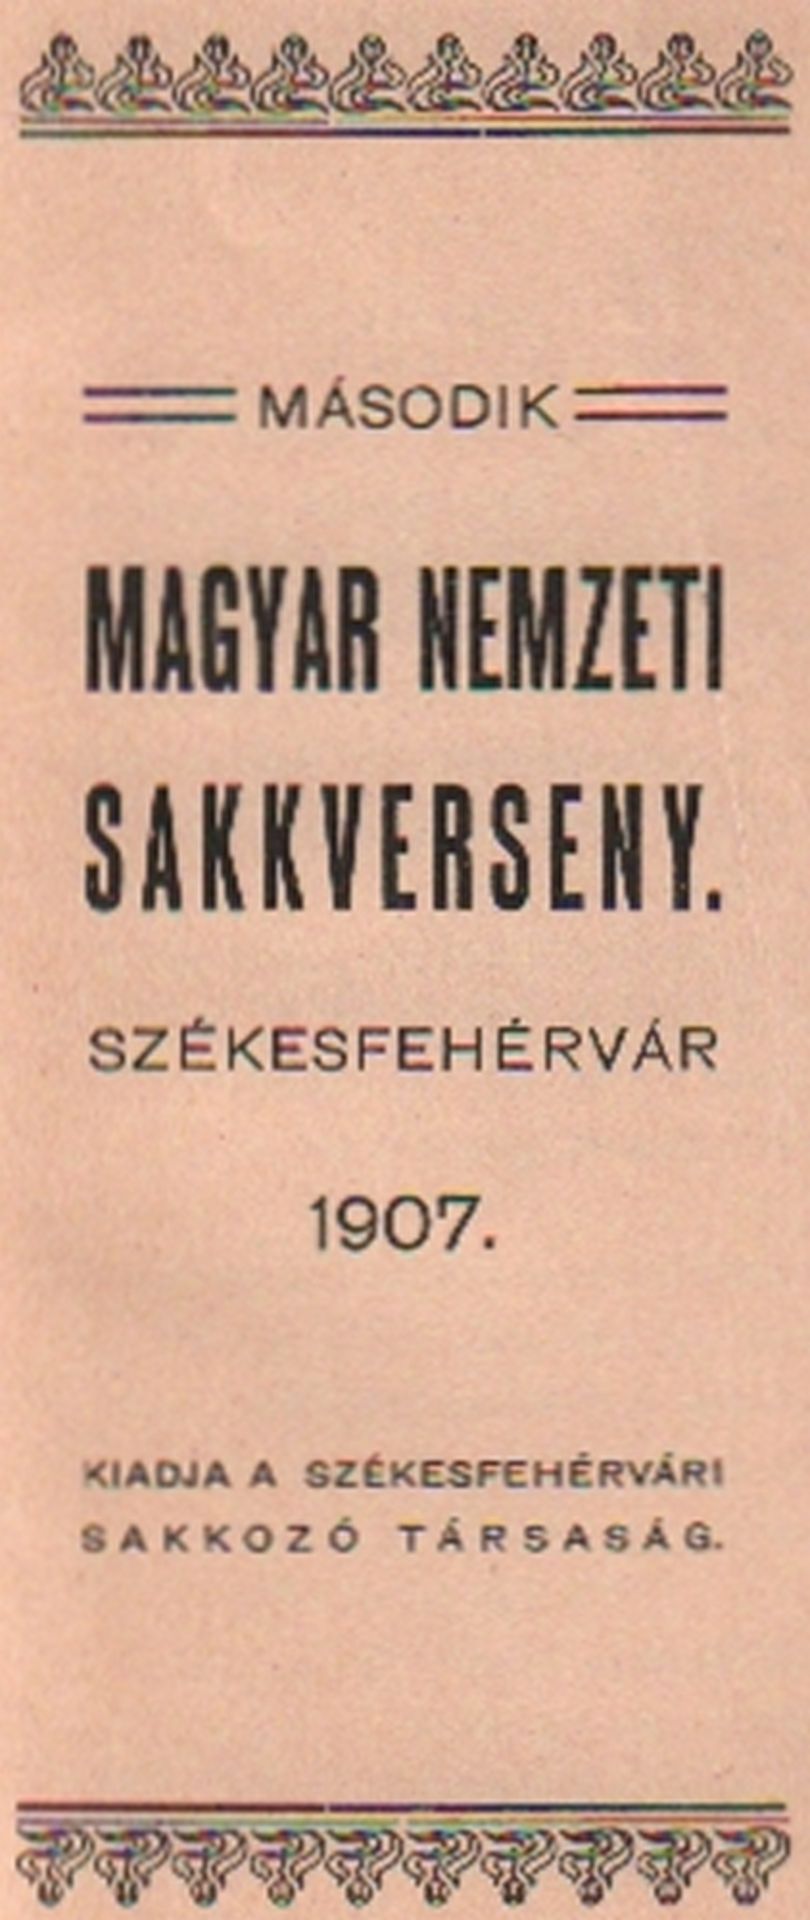 Székesfehérvár 1907. Második magyar nemzeti sakkverseny Székesfehérvár 1907. (Székesfehérvár,